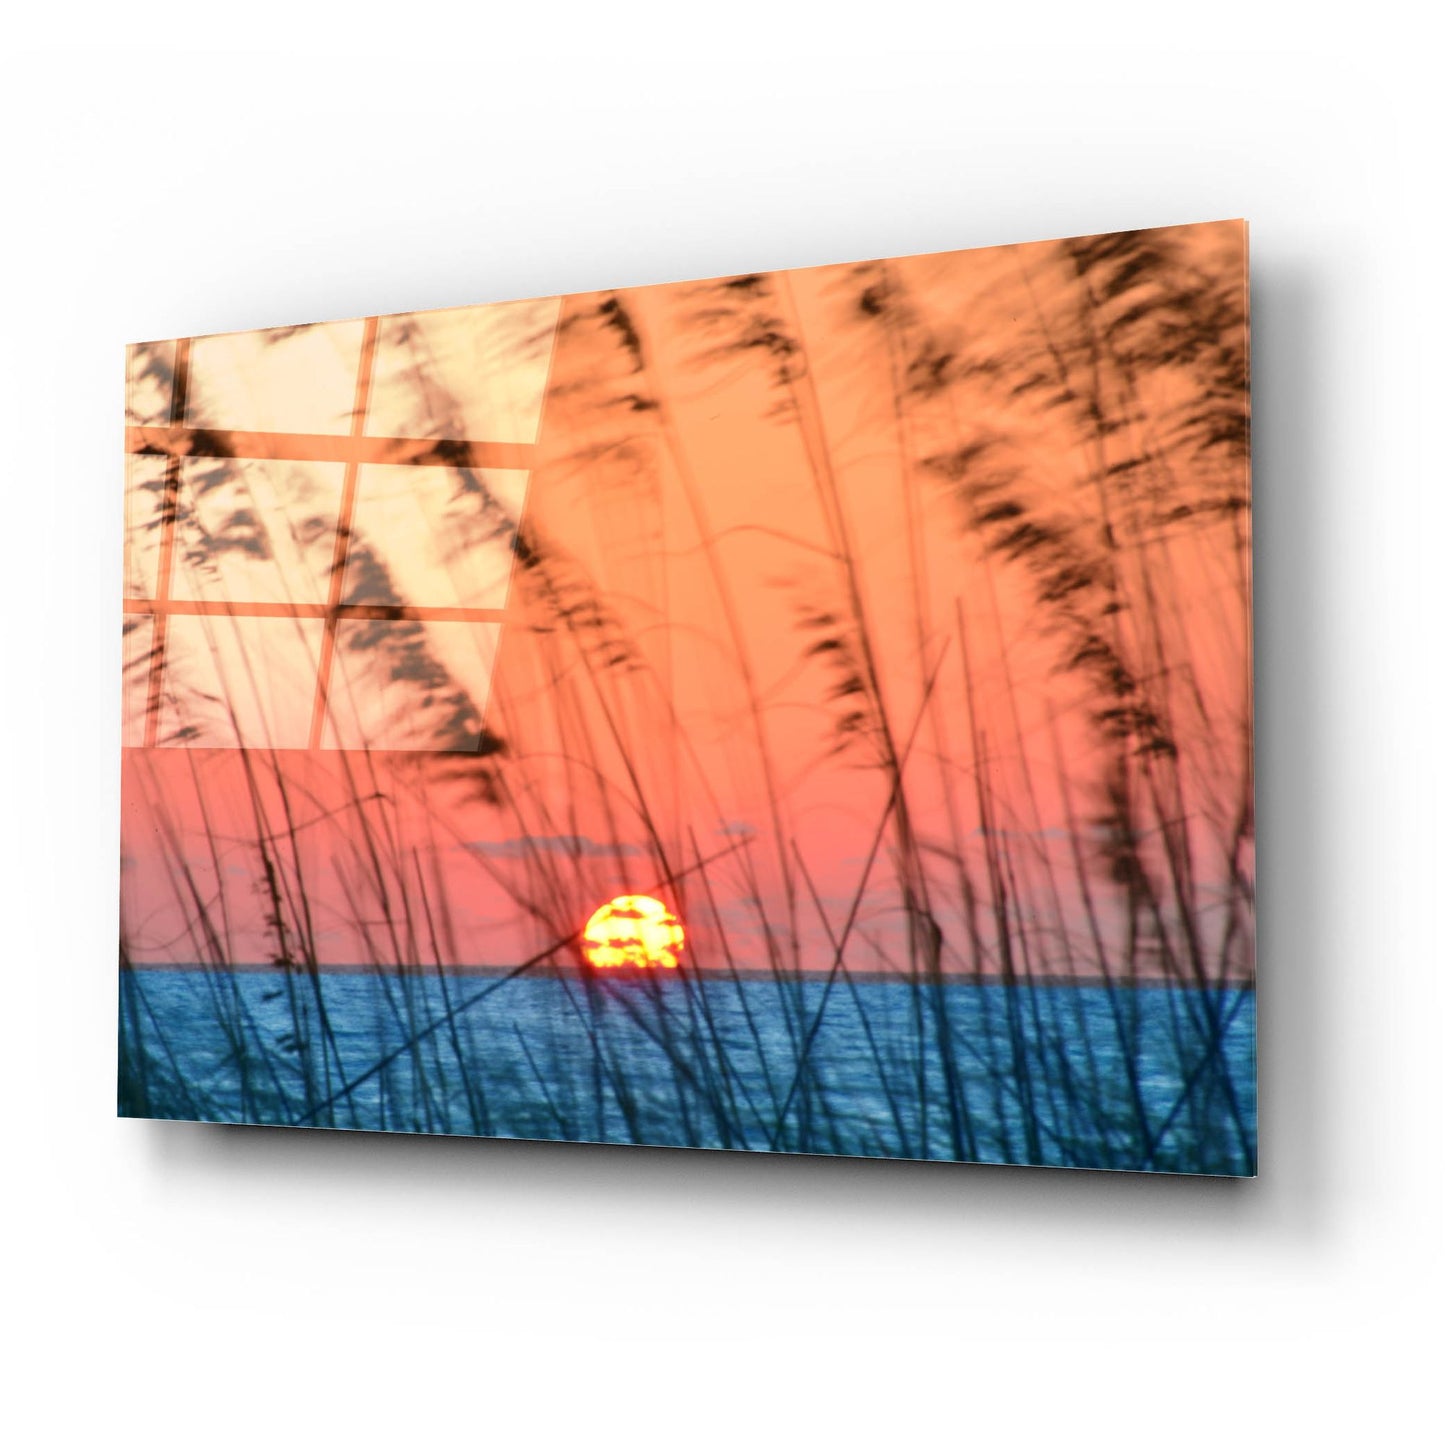 Epic Art 'Sun Dance' by Steve Vaughn, Acrylic Glass Wall Art,24x16